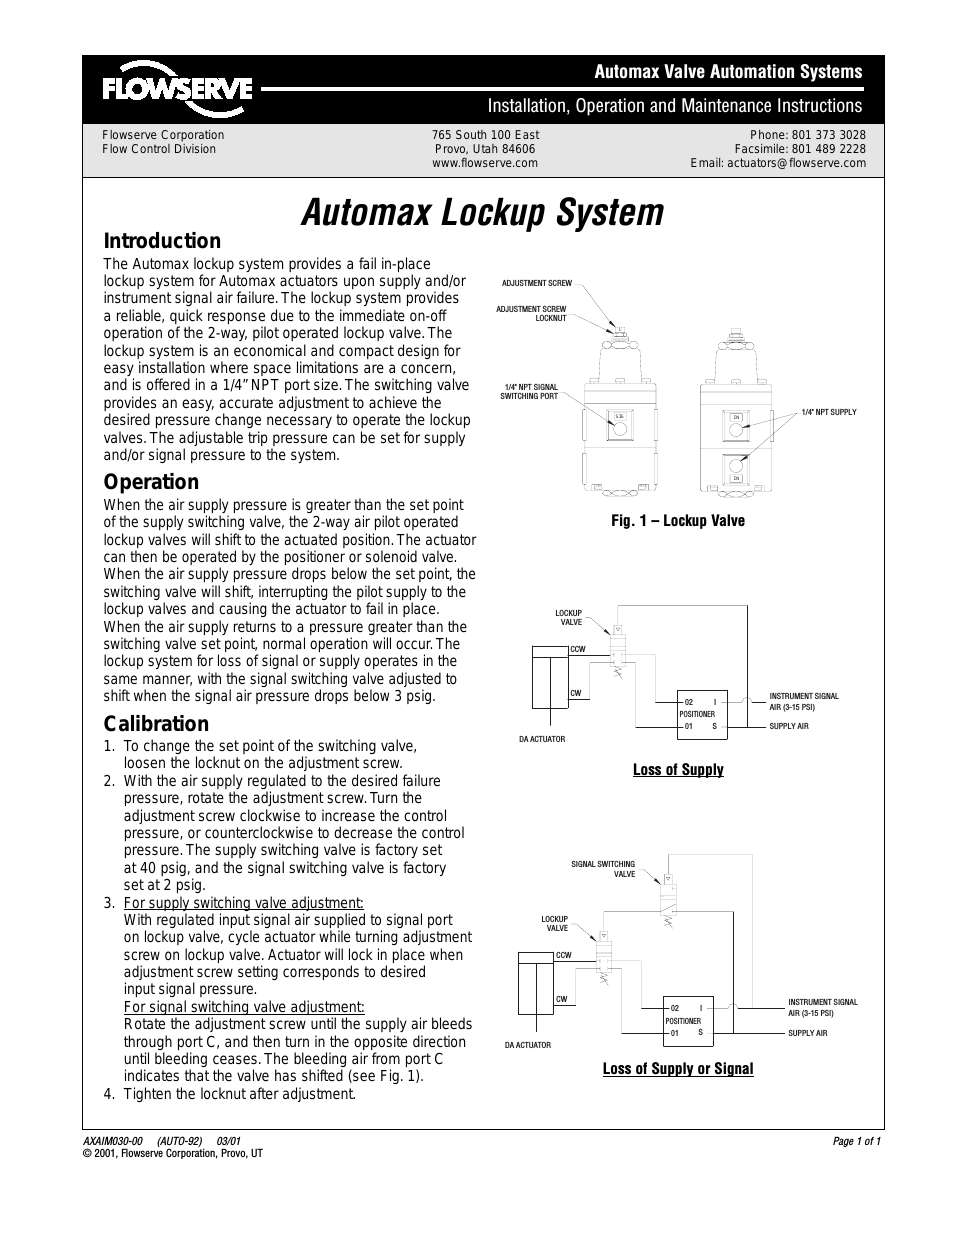 Automax Lockup System